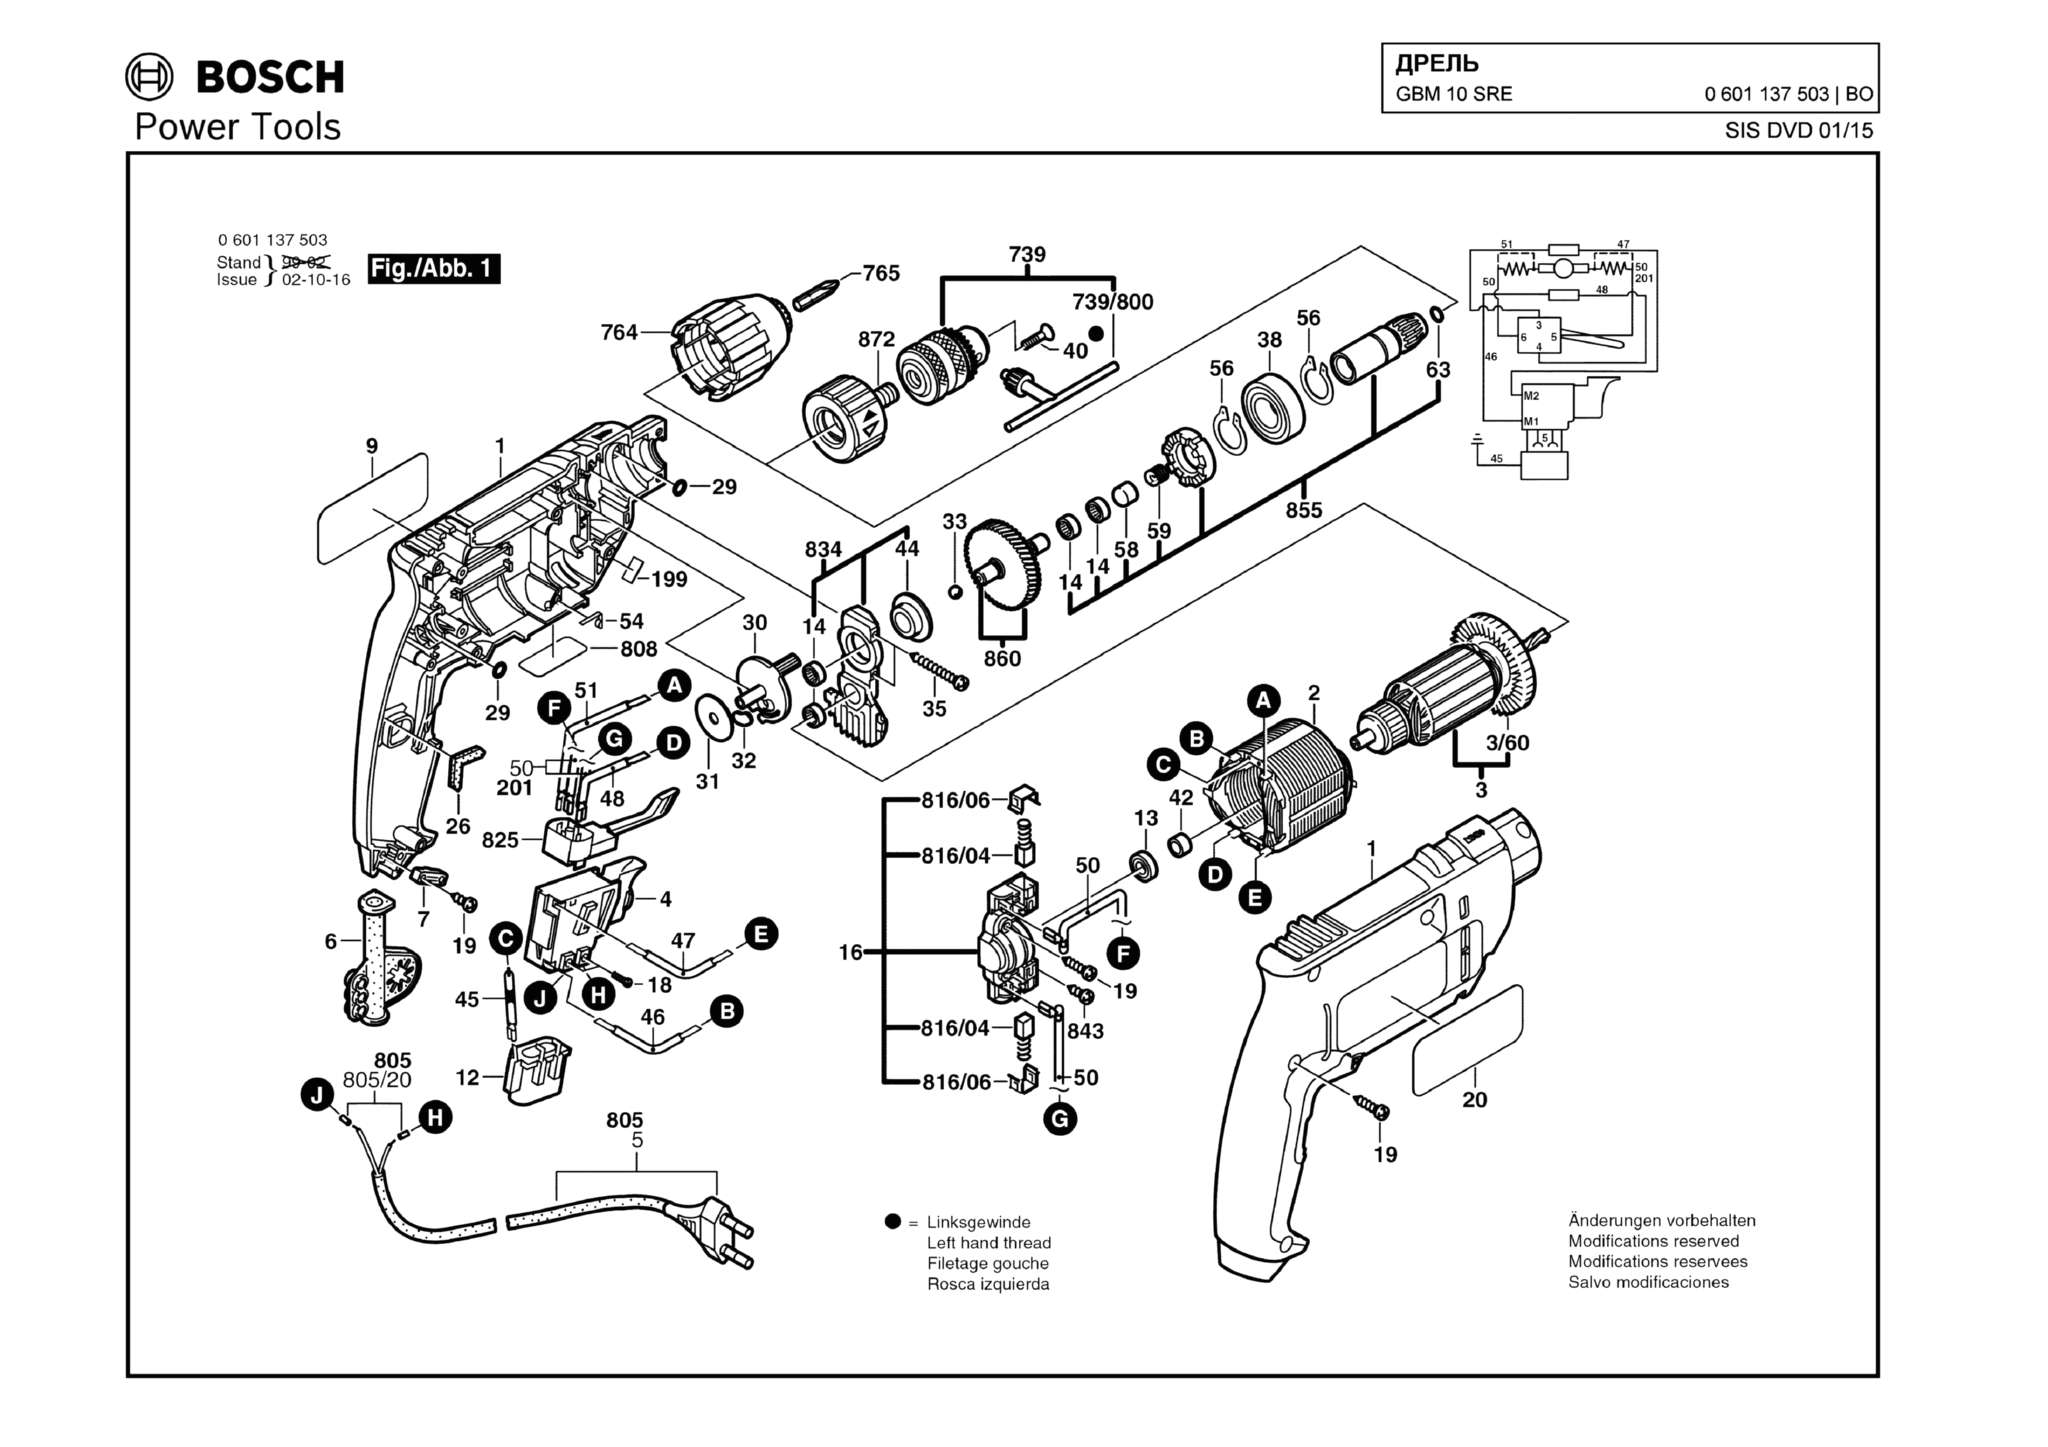 Запчасти, схема и деталировка Bosch GBM 10 SRE (ТИП 0601137503)